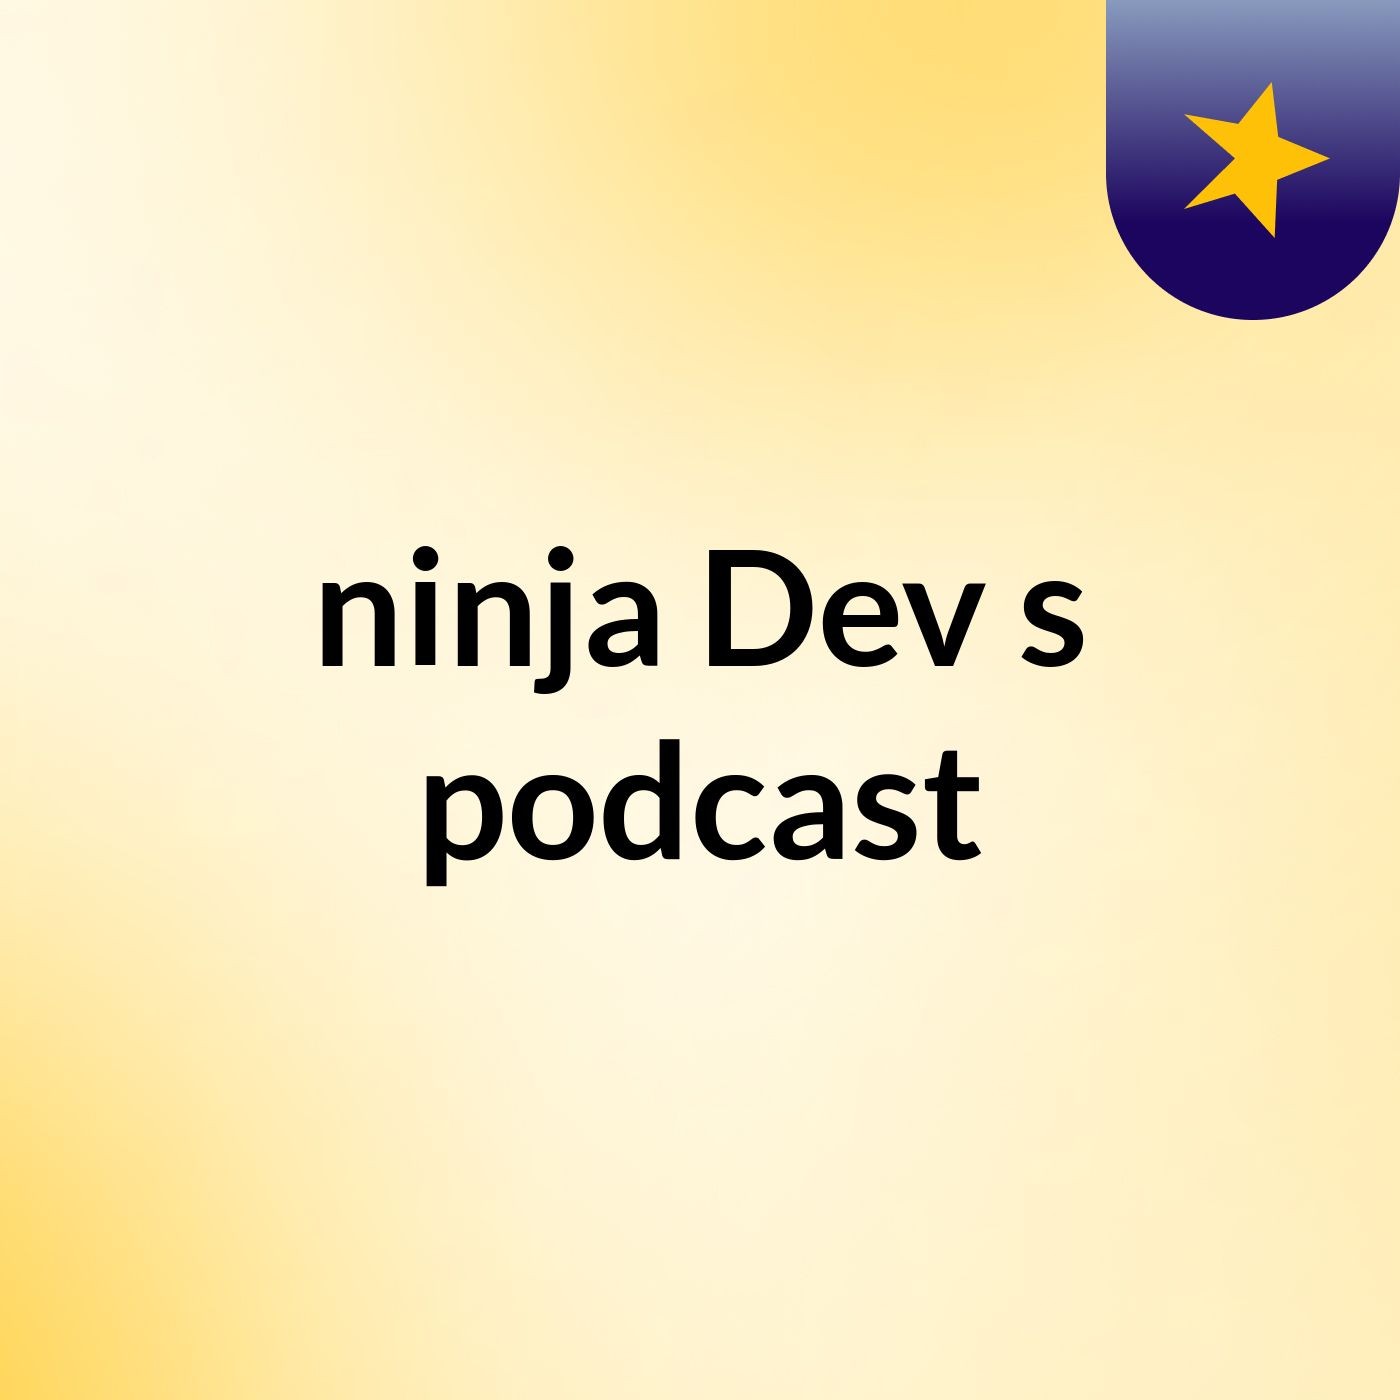 Episode 4 - ninja Dev's podcast